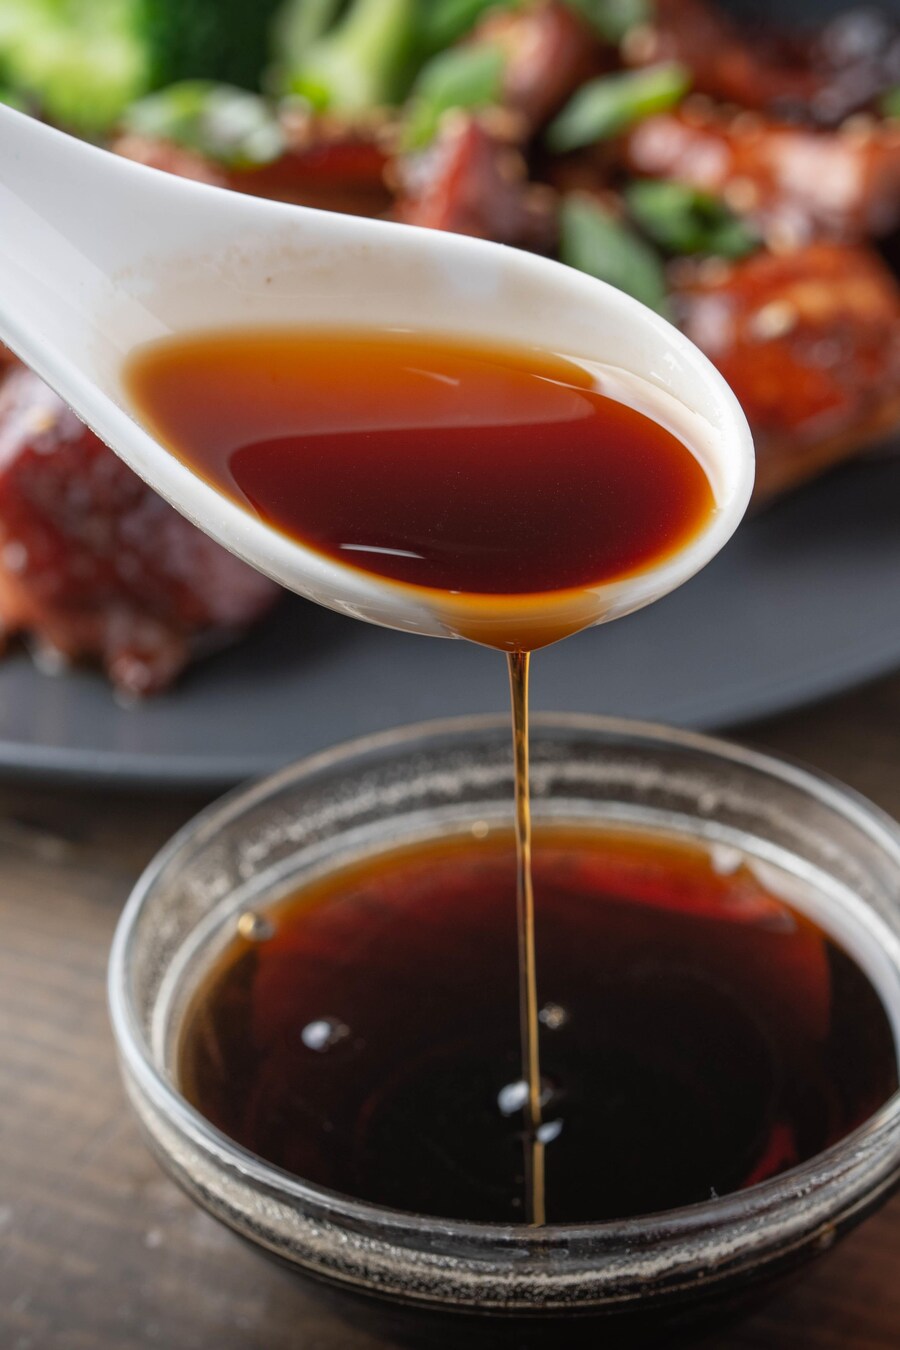 Une cuillérée de sauce teriyaki au-dessus du bol rempli de sauce. 